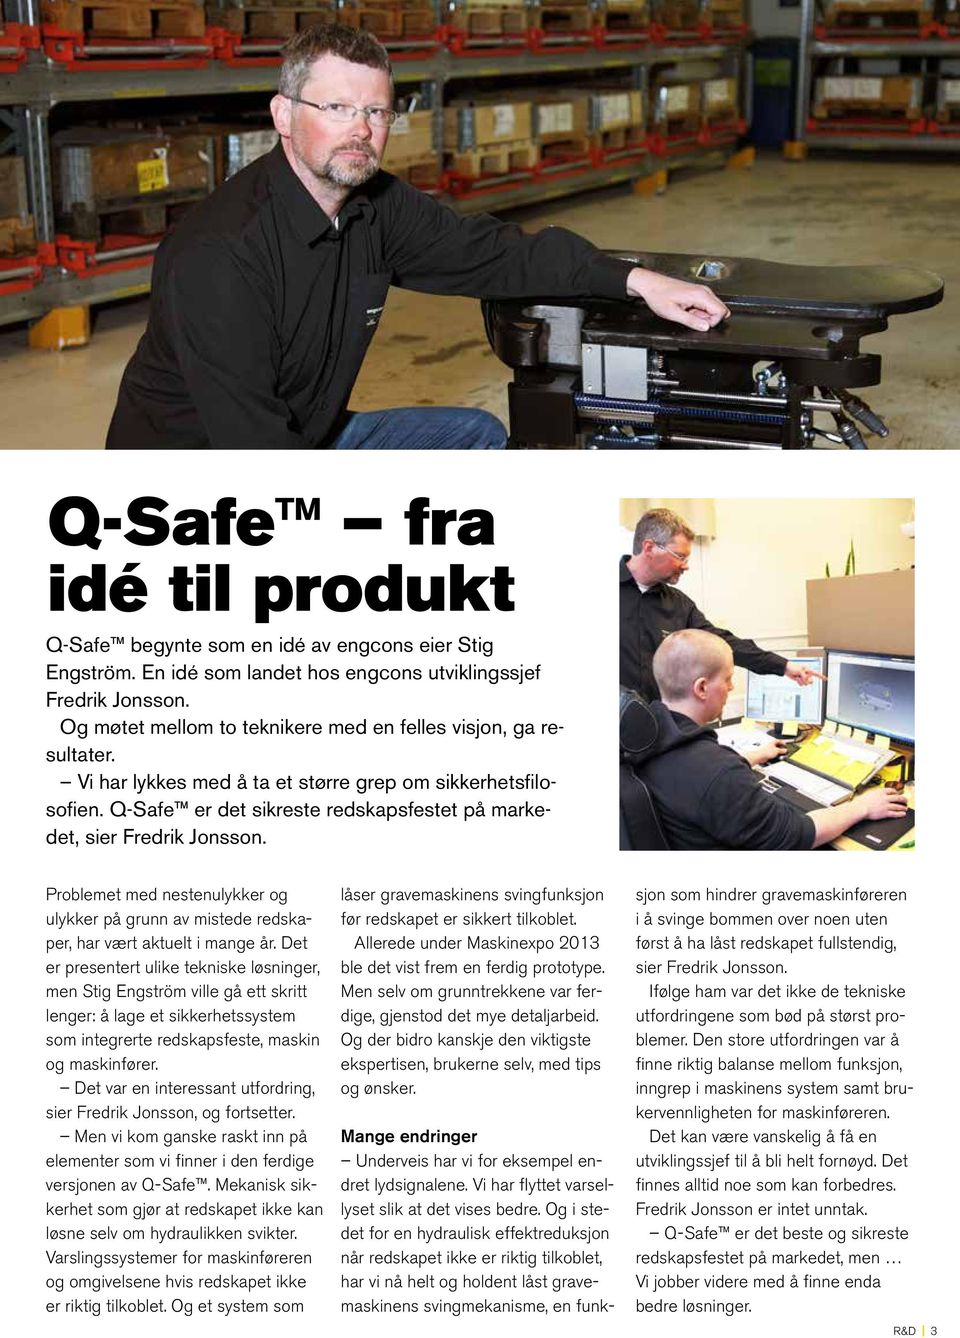 Q-Safe er det sikreste redskapsfestet på markedet, sier Fredrik Jonsson. Problemet med nestenulykker og ulykker på grunn av mistede redskaper, har vært aktuelt i mange år.